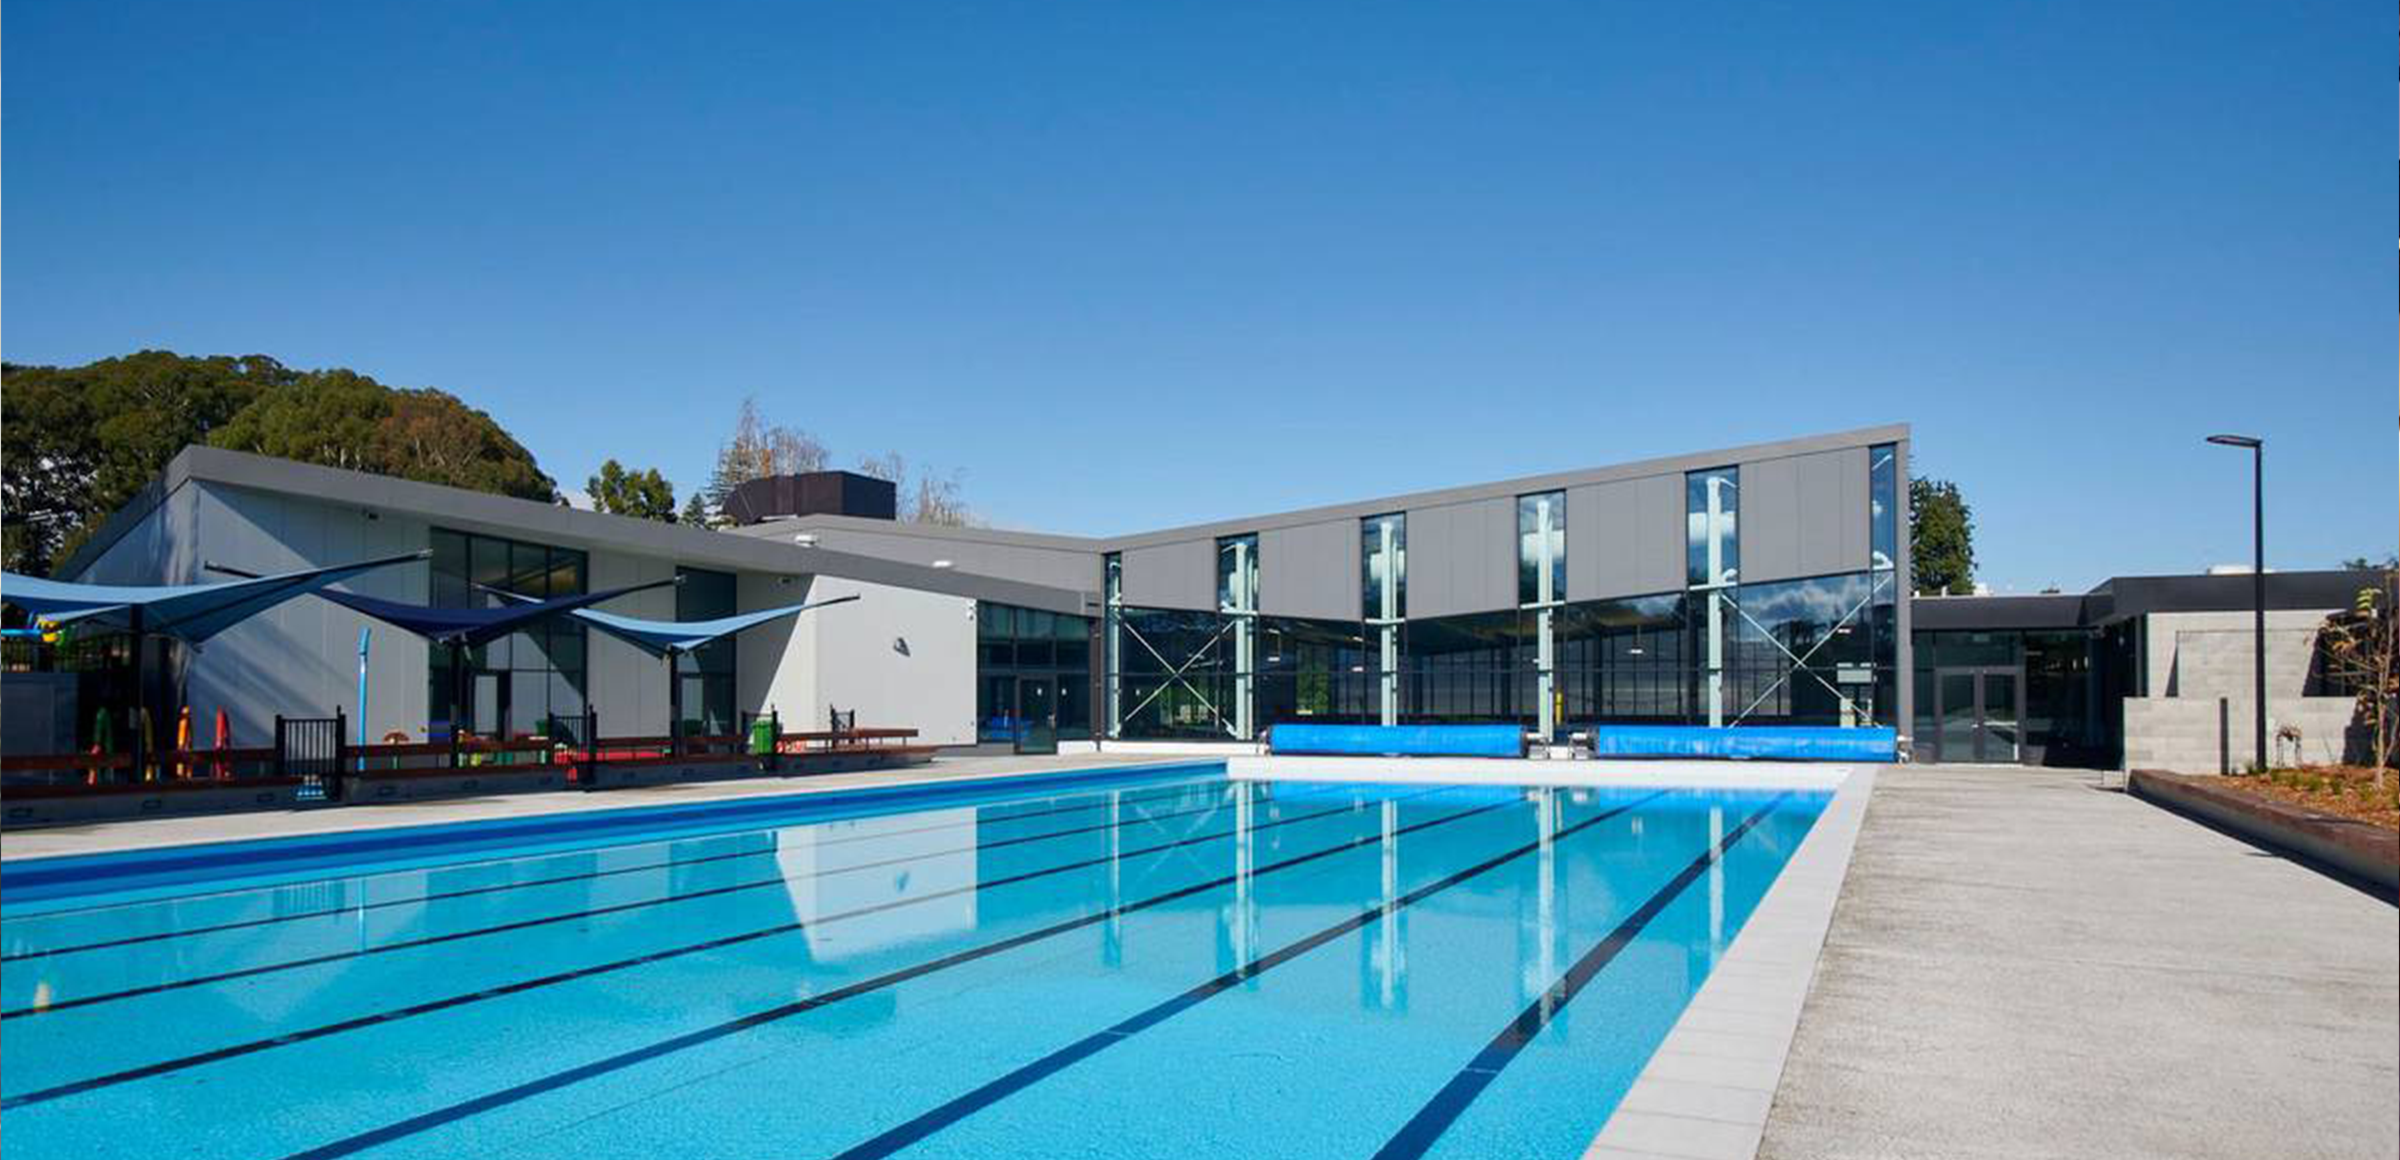 Dive into Delight: Cambridge’s New Multi-Generational Swimming Complex